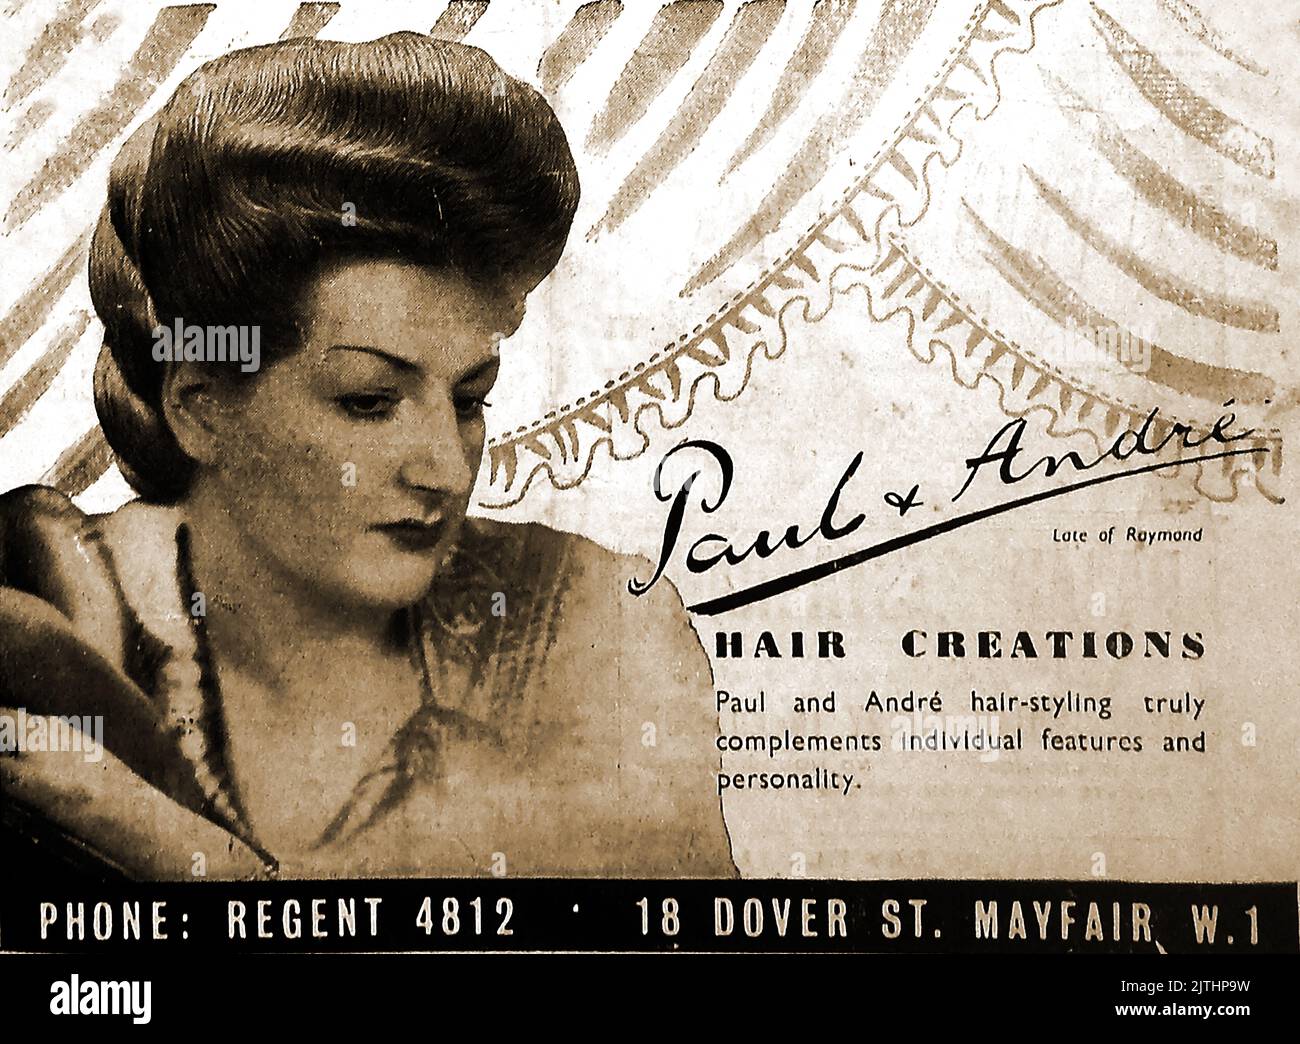 Un anuncio de 1946 para las creaciones del pelo de Paul Andre 'late of Raymond' de 18 Dover street, Mayfair, Londres Foto de stock